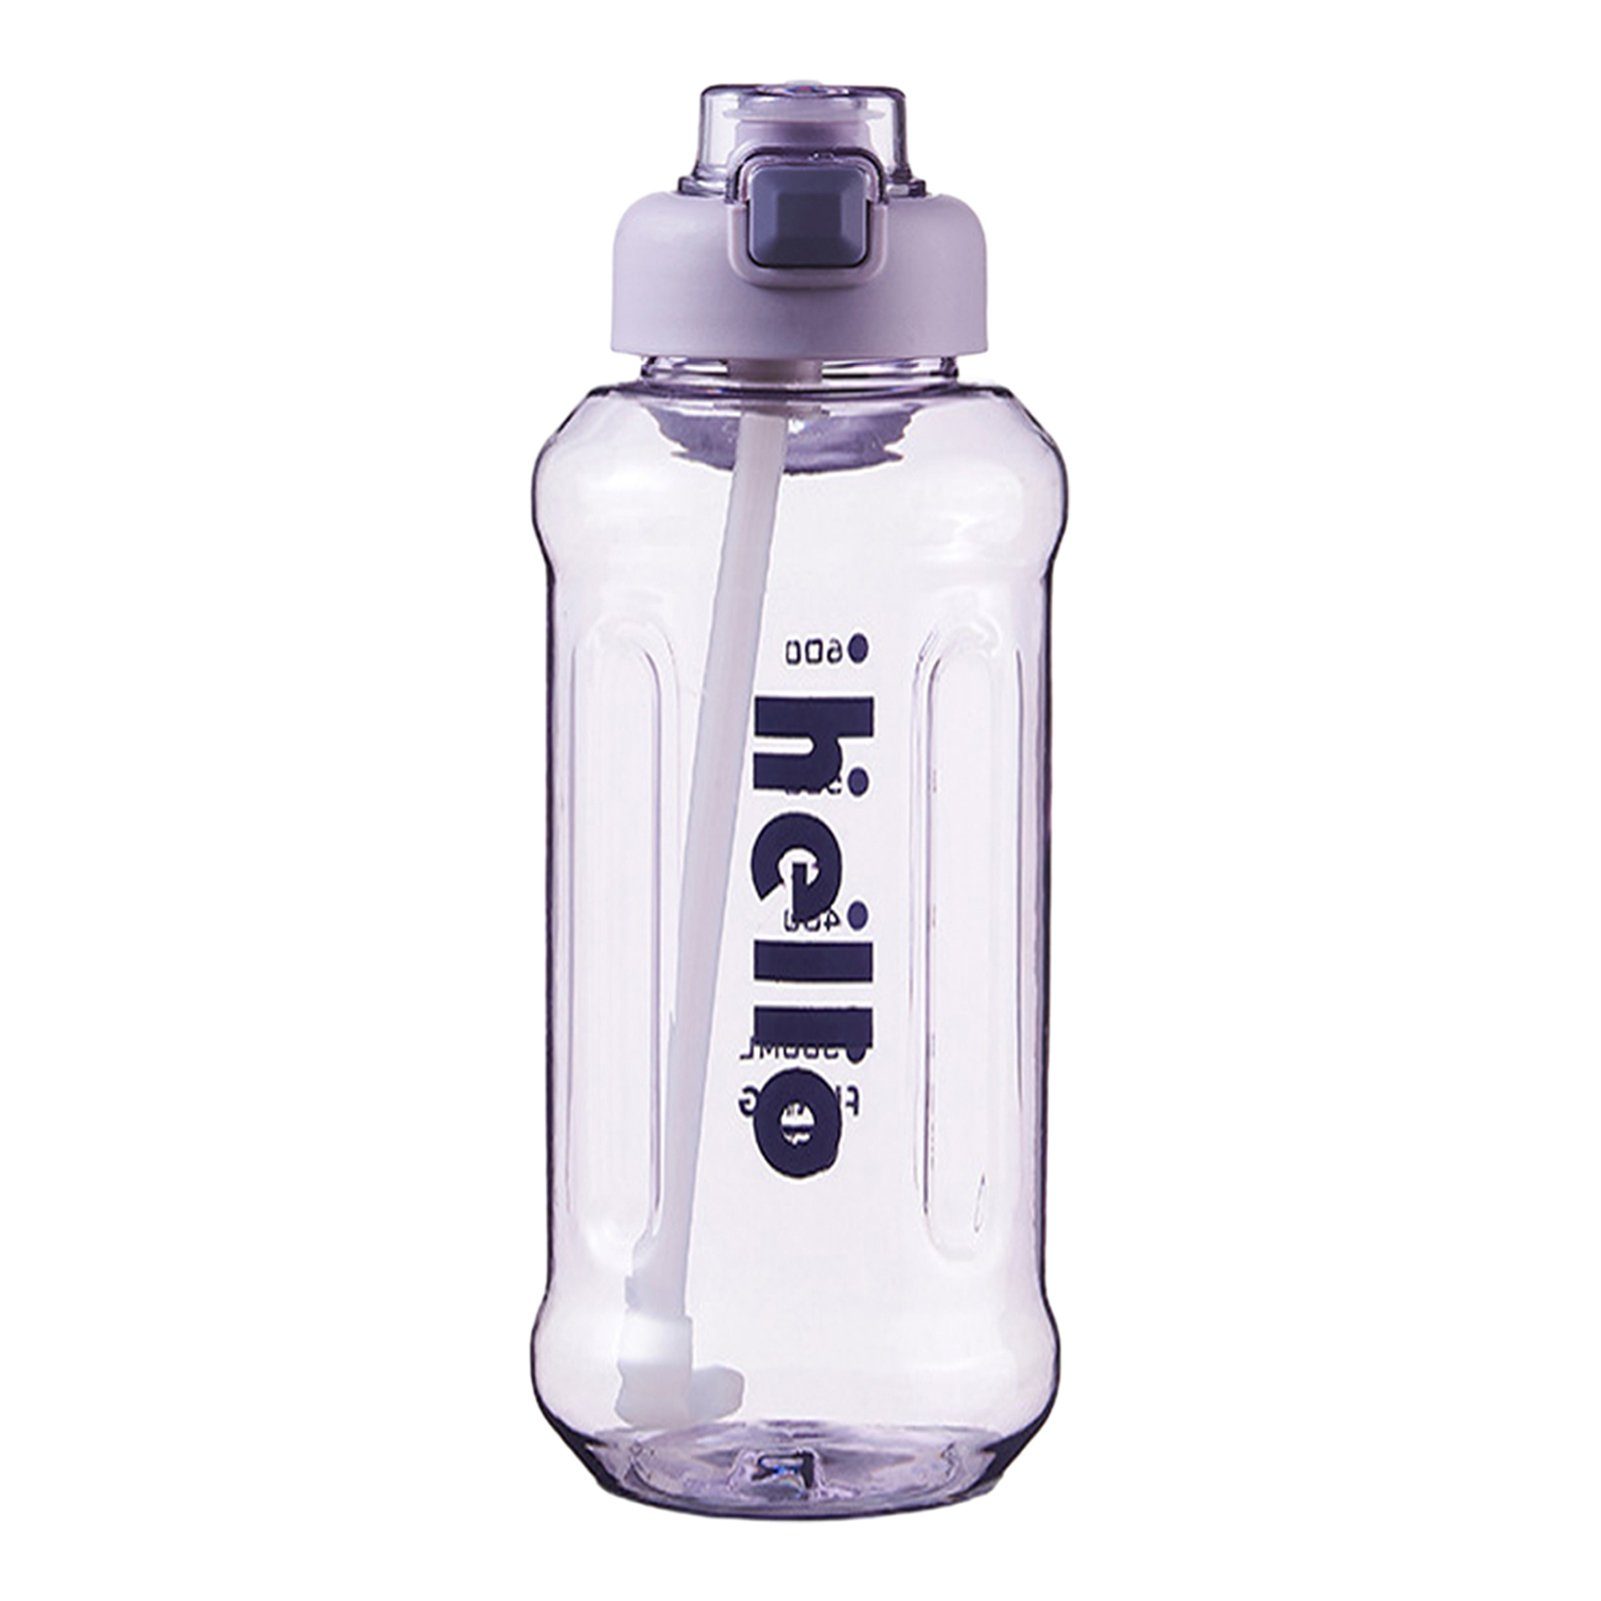 Blusmart Trinkflasche Stroh-Wasserbecher Trinkflasche Tragbarer 1300ml Versiegelter, Hoher Mit Kapazität, Griff, purple